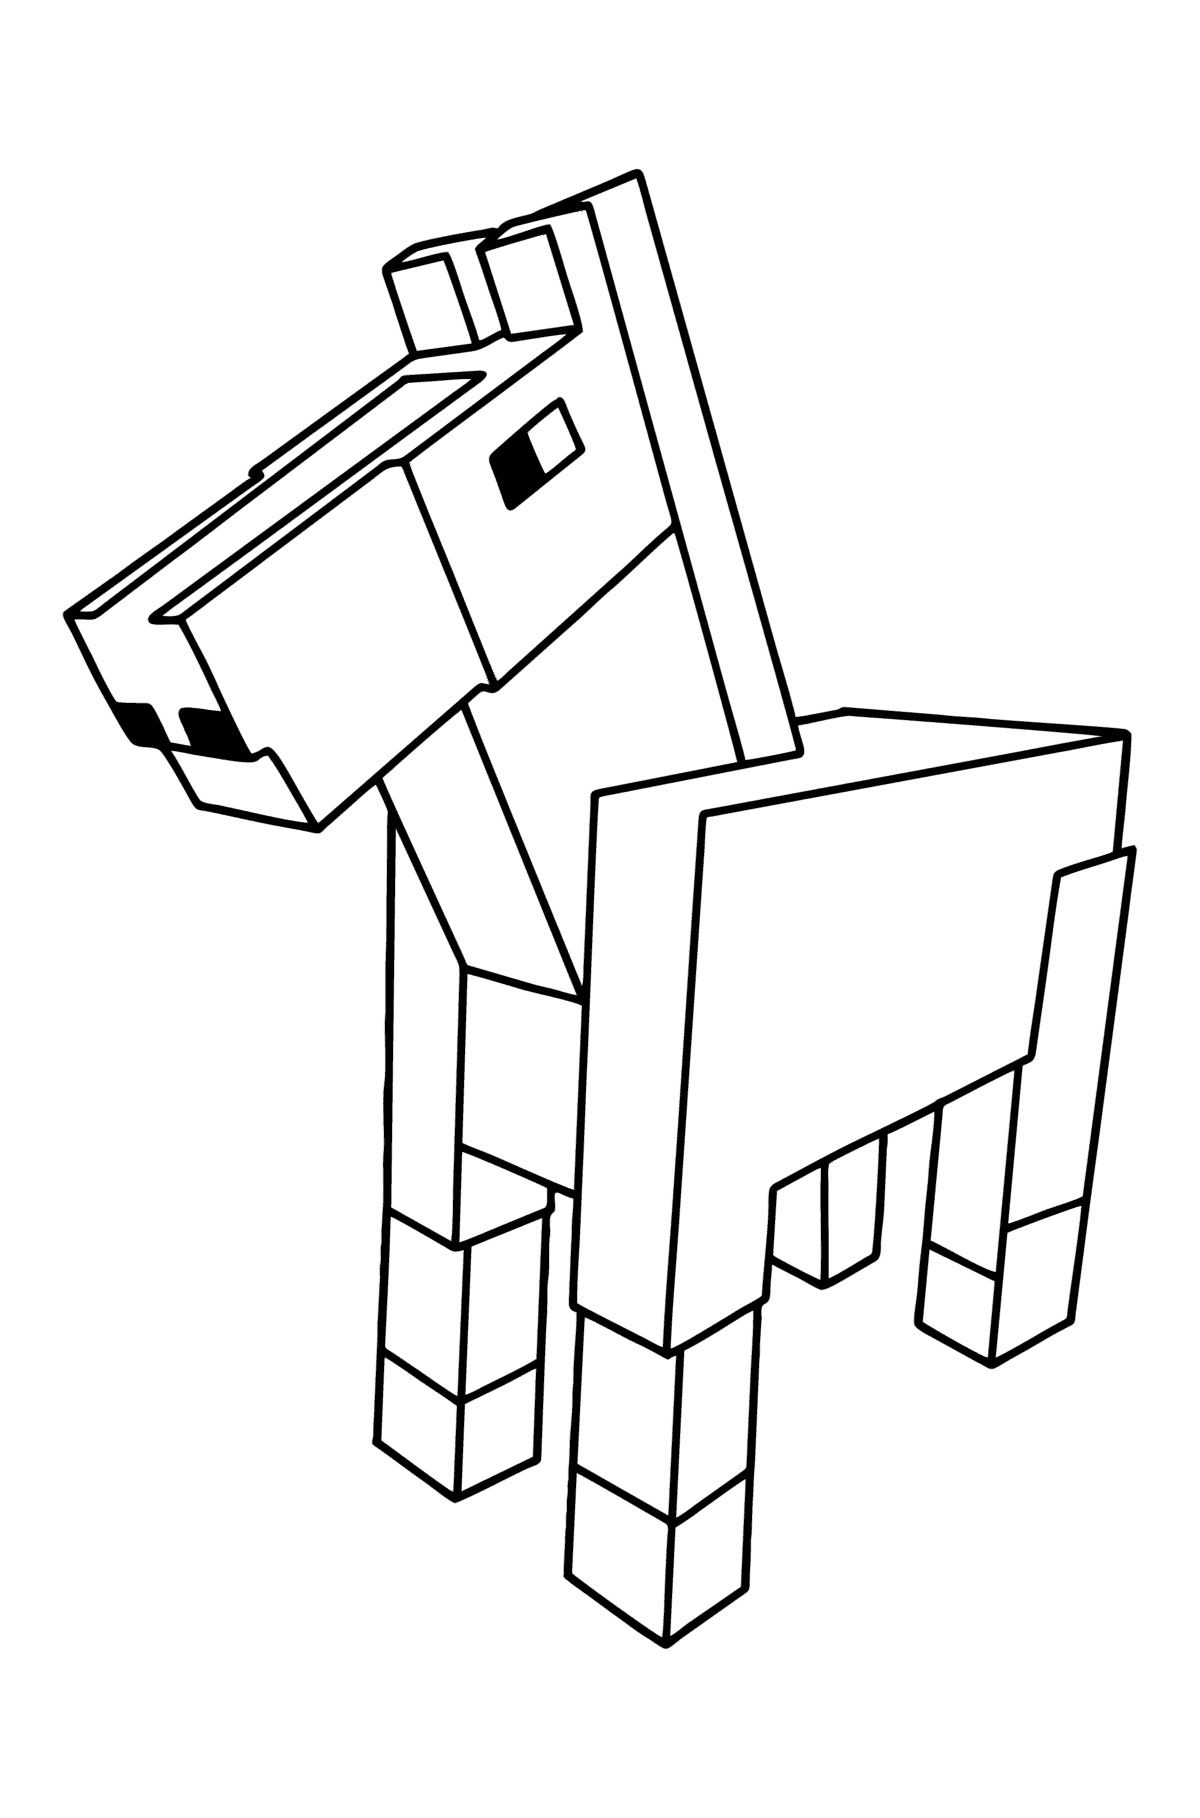 Coloriage Minecraft Horse - Coloriages pour les Enfants